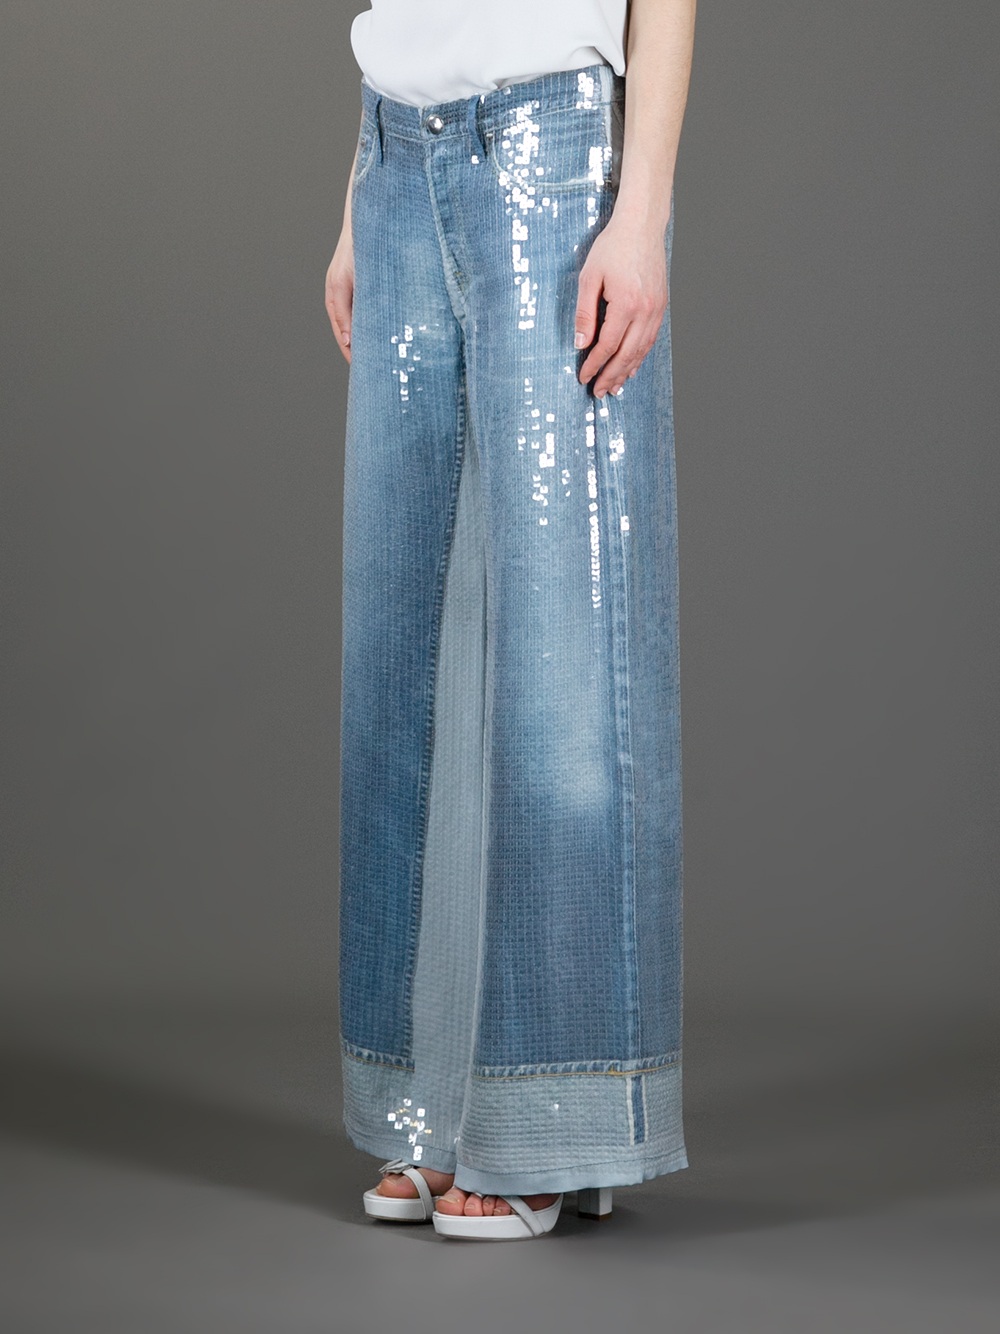 Lyst - Jean Paul Gaultier Sequin Wide Leg Jean in Blue